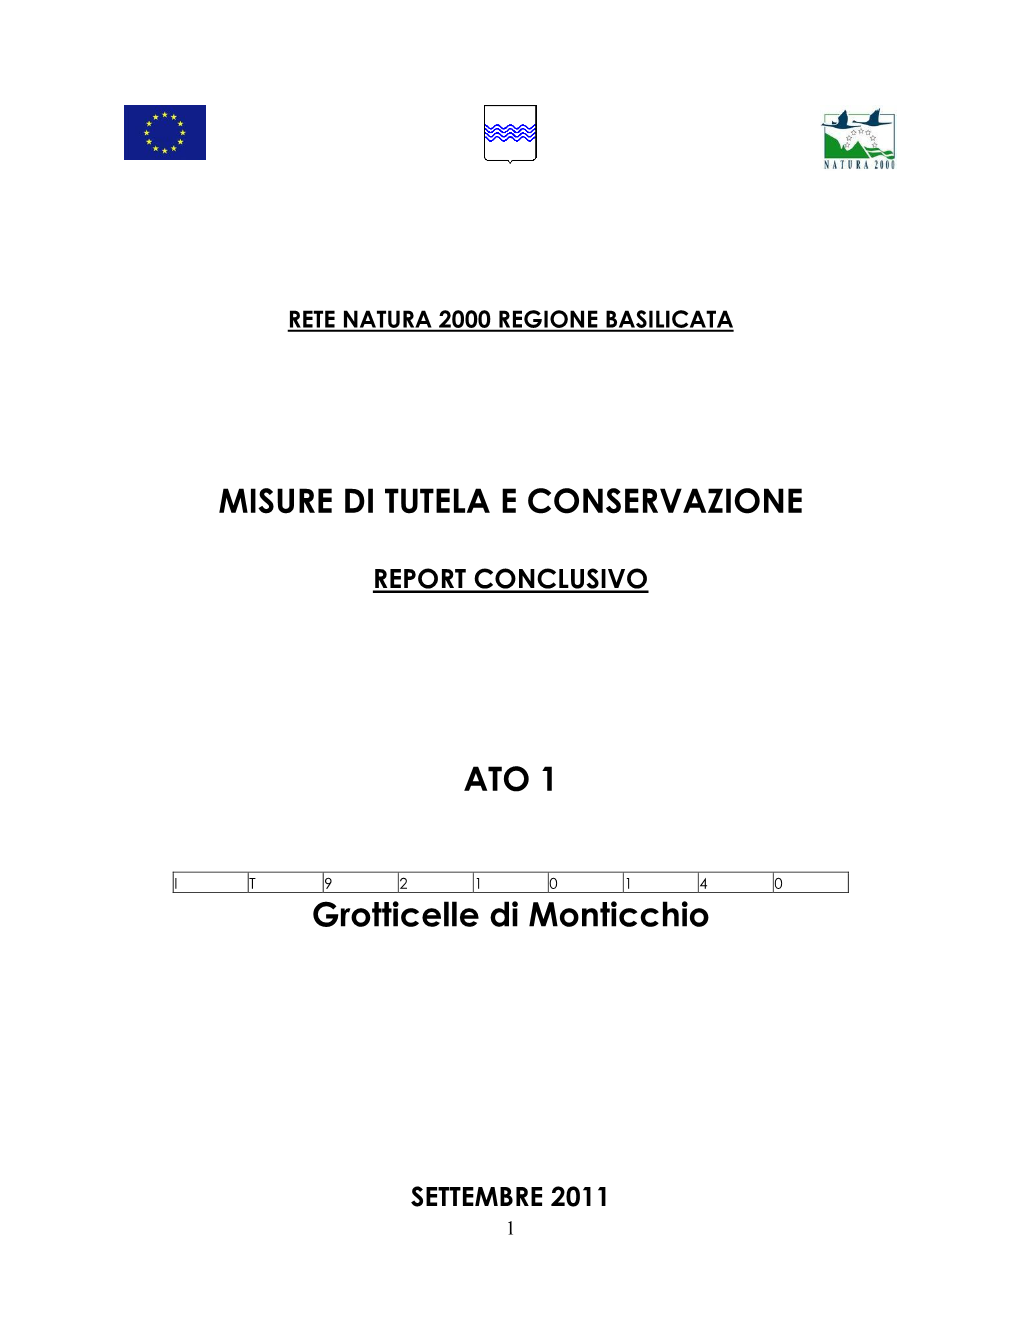 Report Misure Grotticelle Di Monticchio